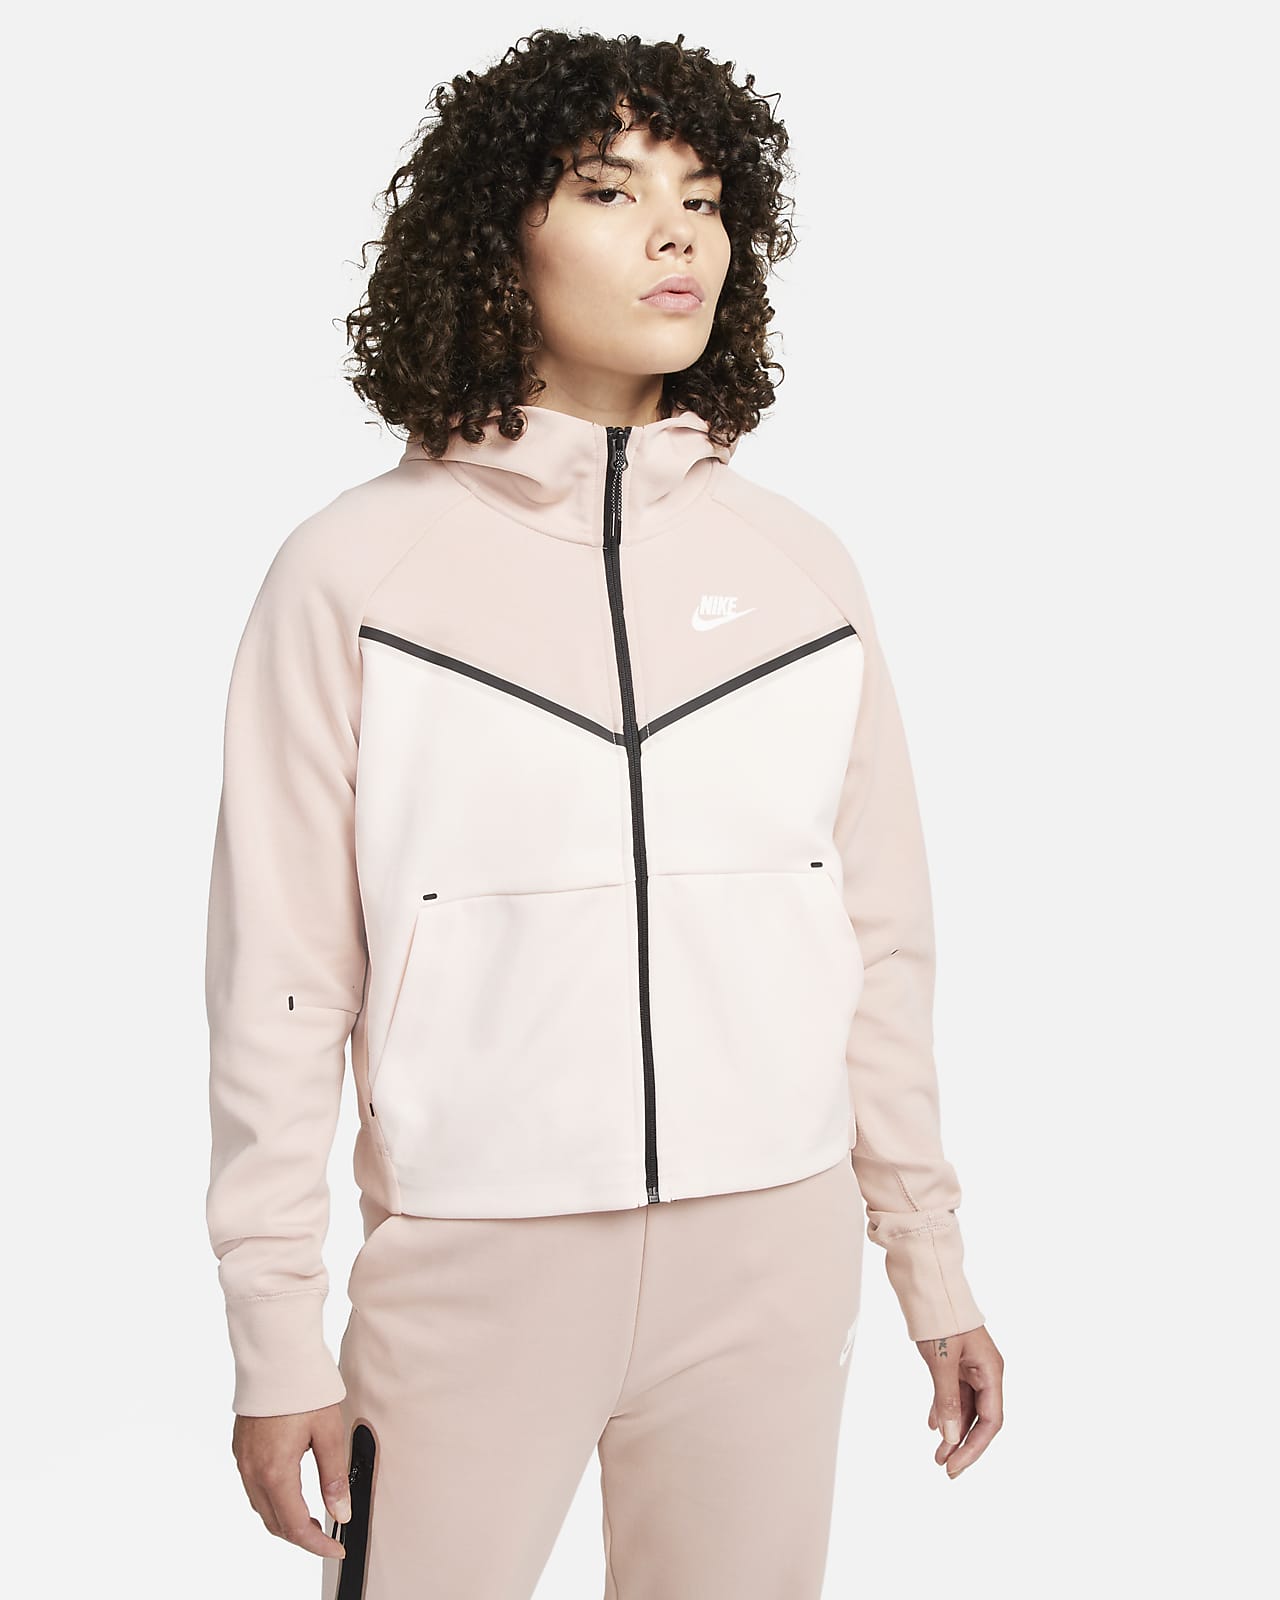 Nike Sportswear Tech Fleece Windrunner Women's Full-Zip Hoodie